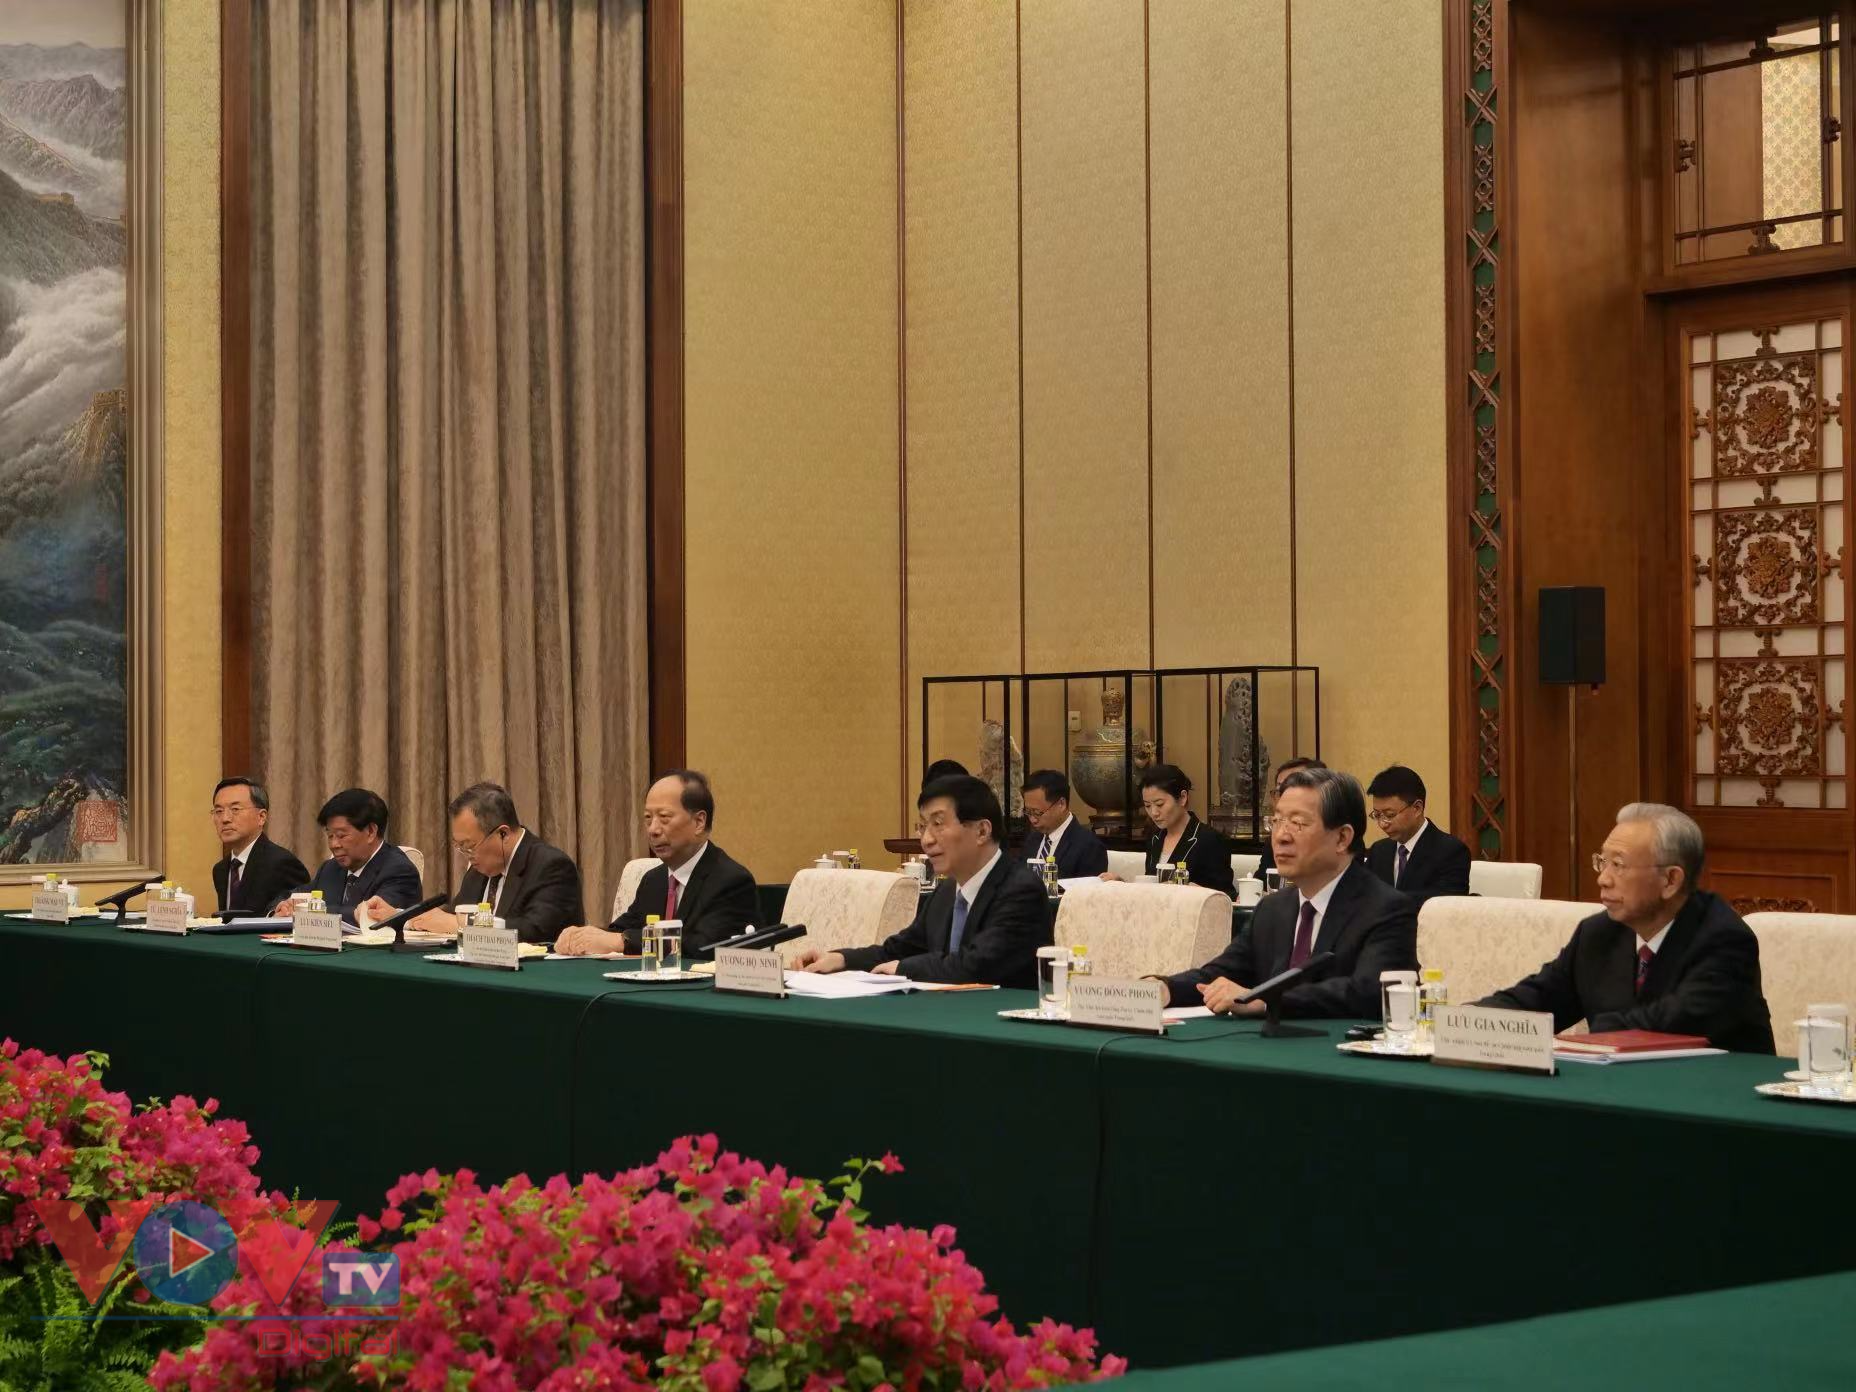 Đoàn đại biểu cấp cao TP Hà Nội chào xã giao Chủ tịch Chính hiệp Trung Quốc - Ảnh 4.